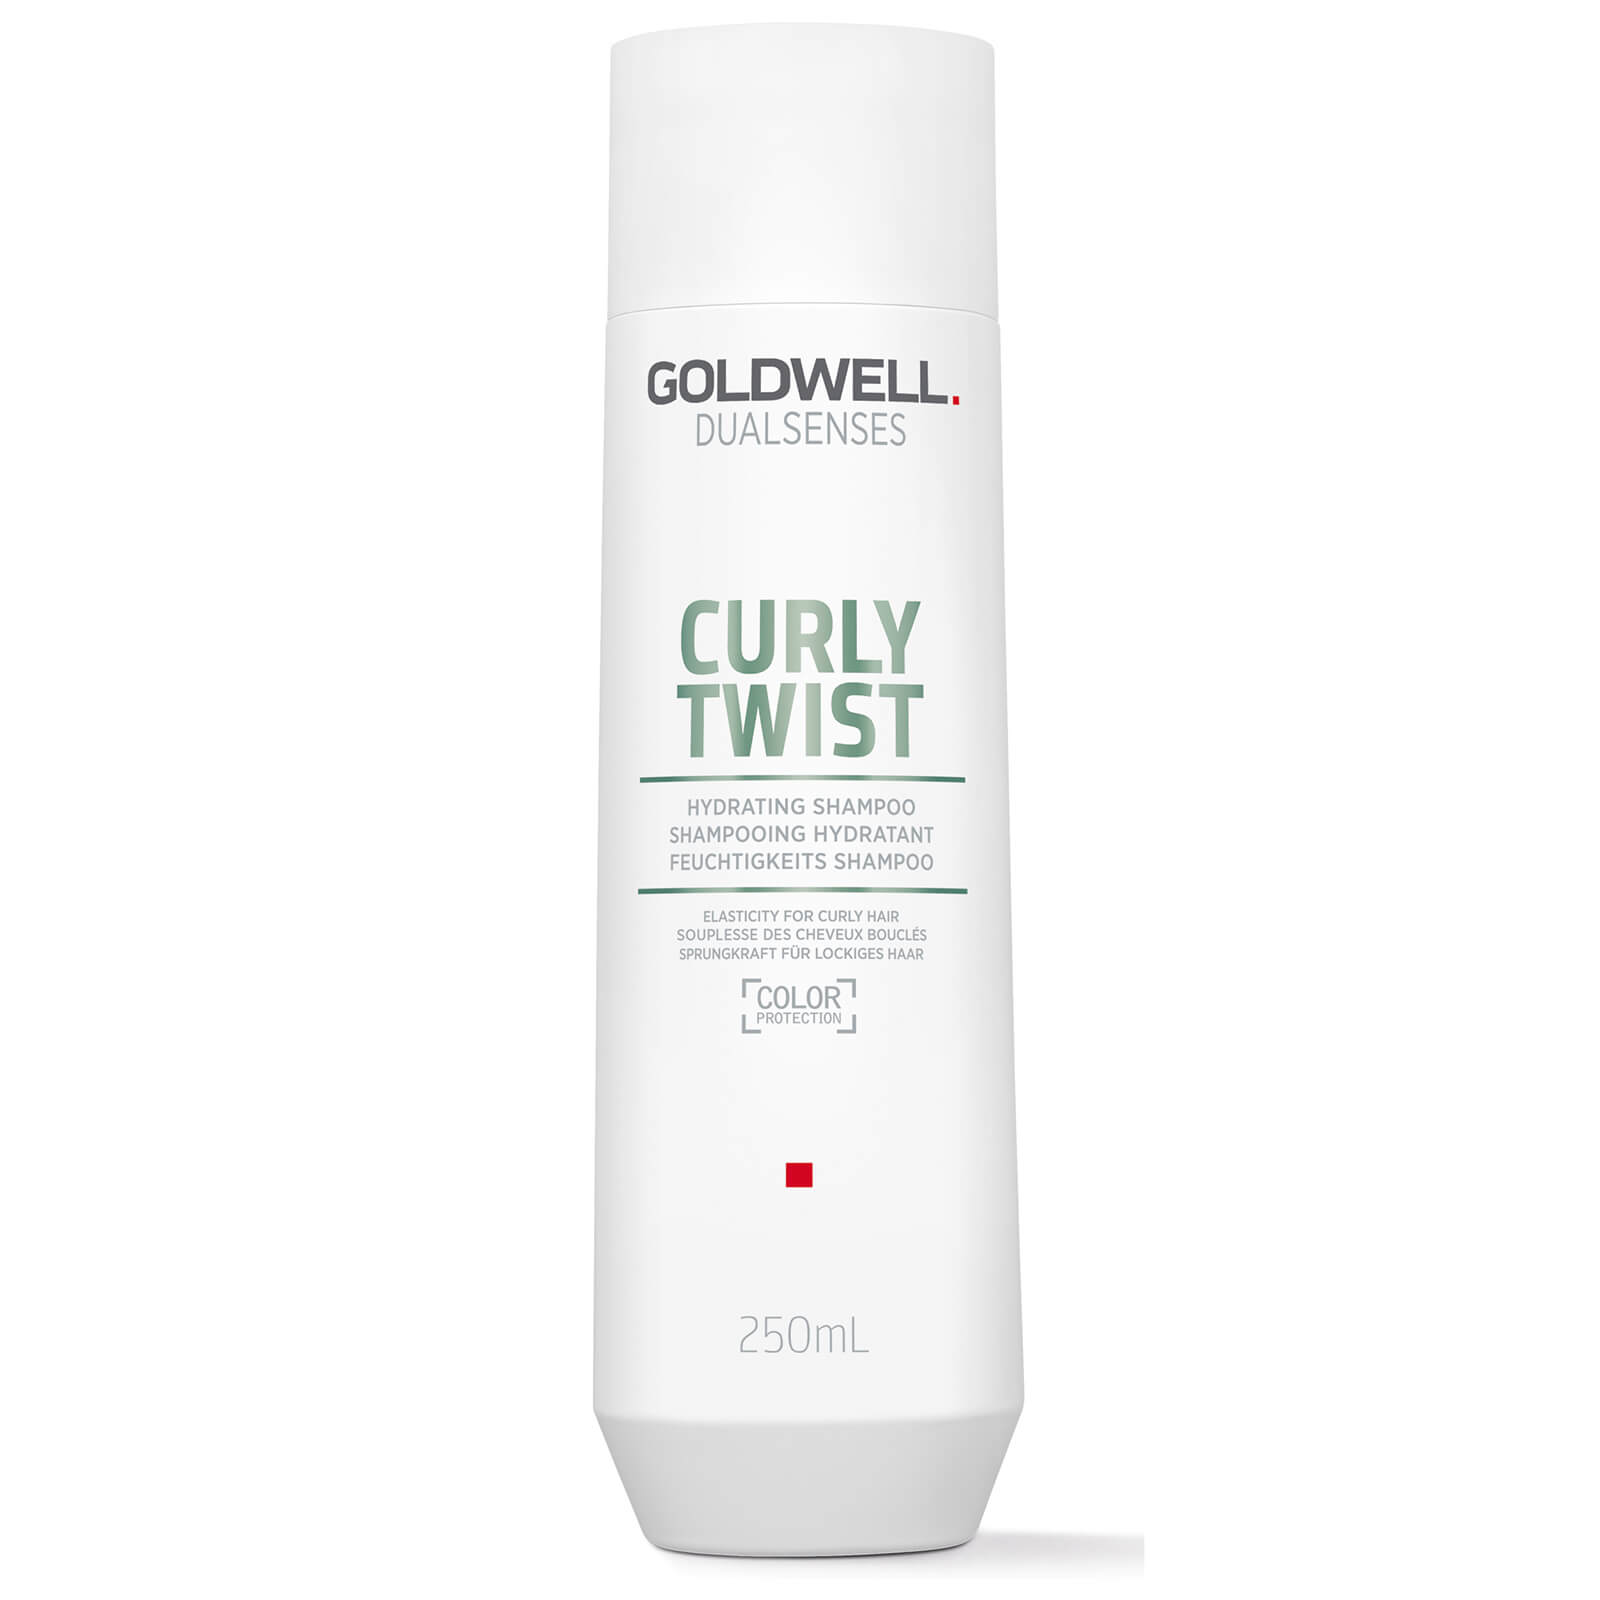 Goldwell Curly Twist Hydrating Shampoo 250ml